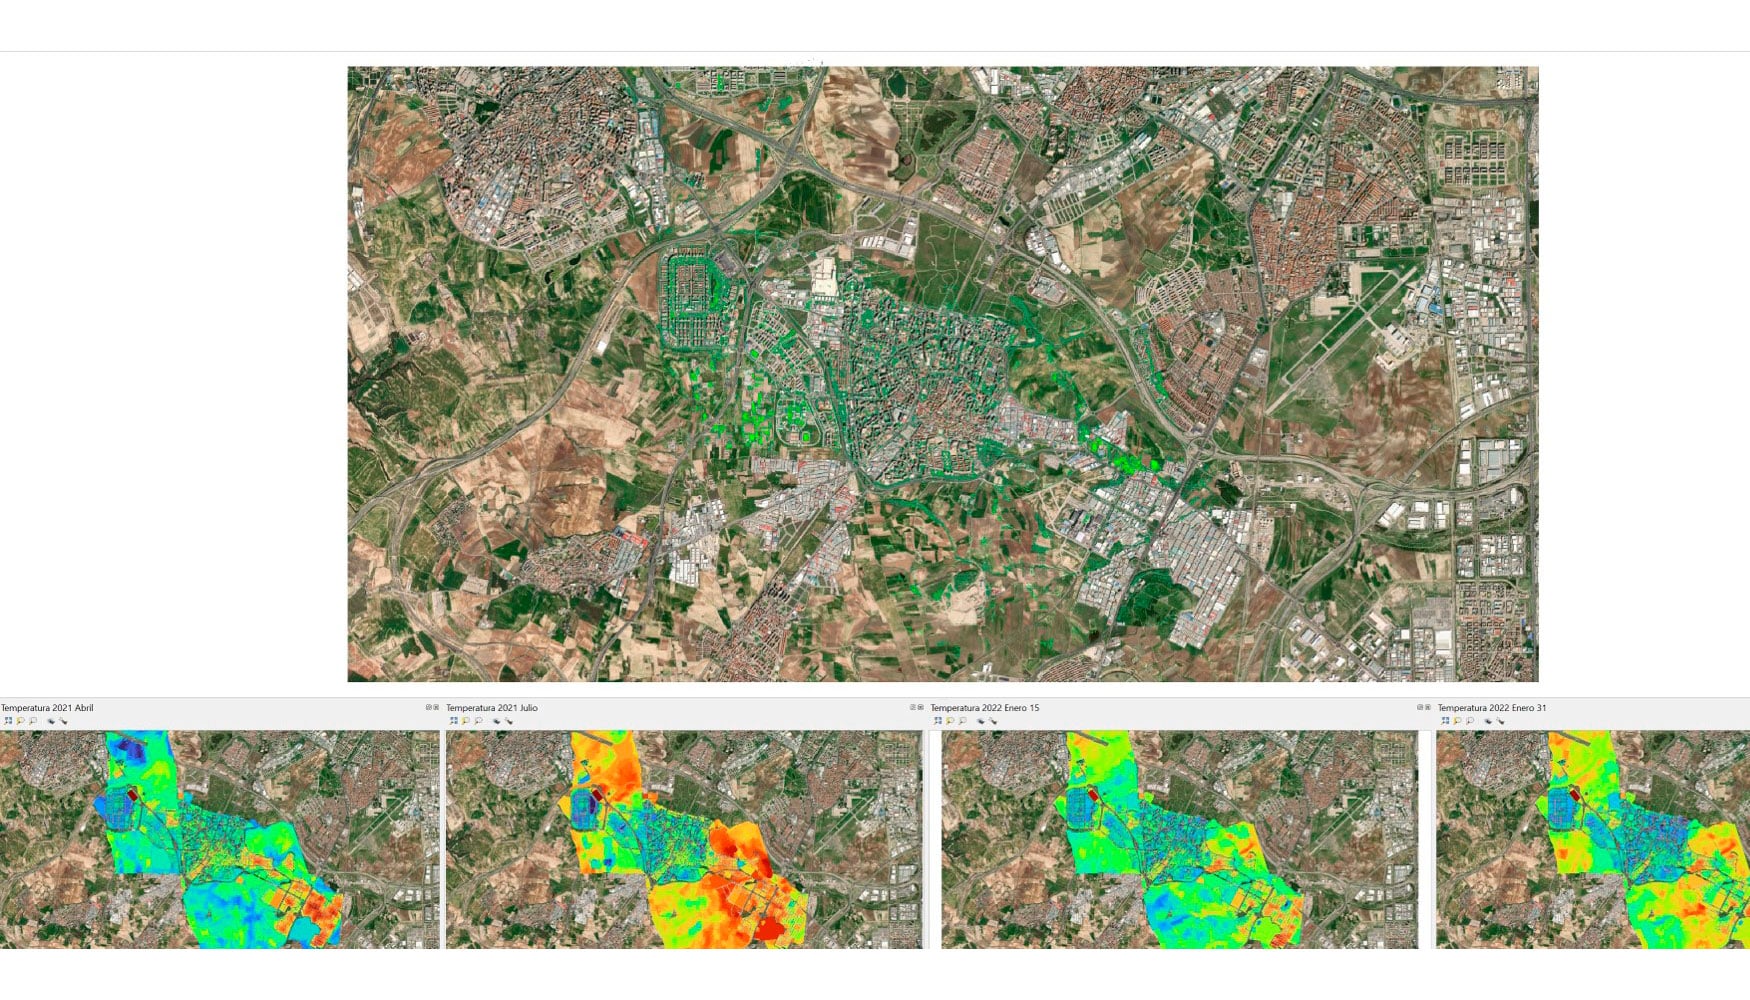 Vodafone y OHLA revolucionan la gestión de zonas verdes urbanas con tecnología geoespacial e inteligencia artificial